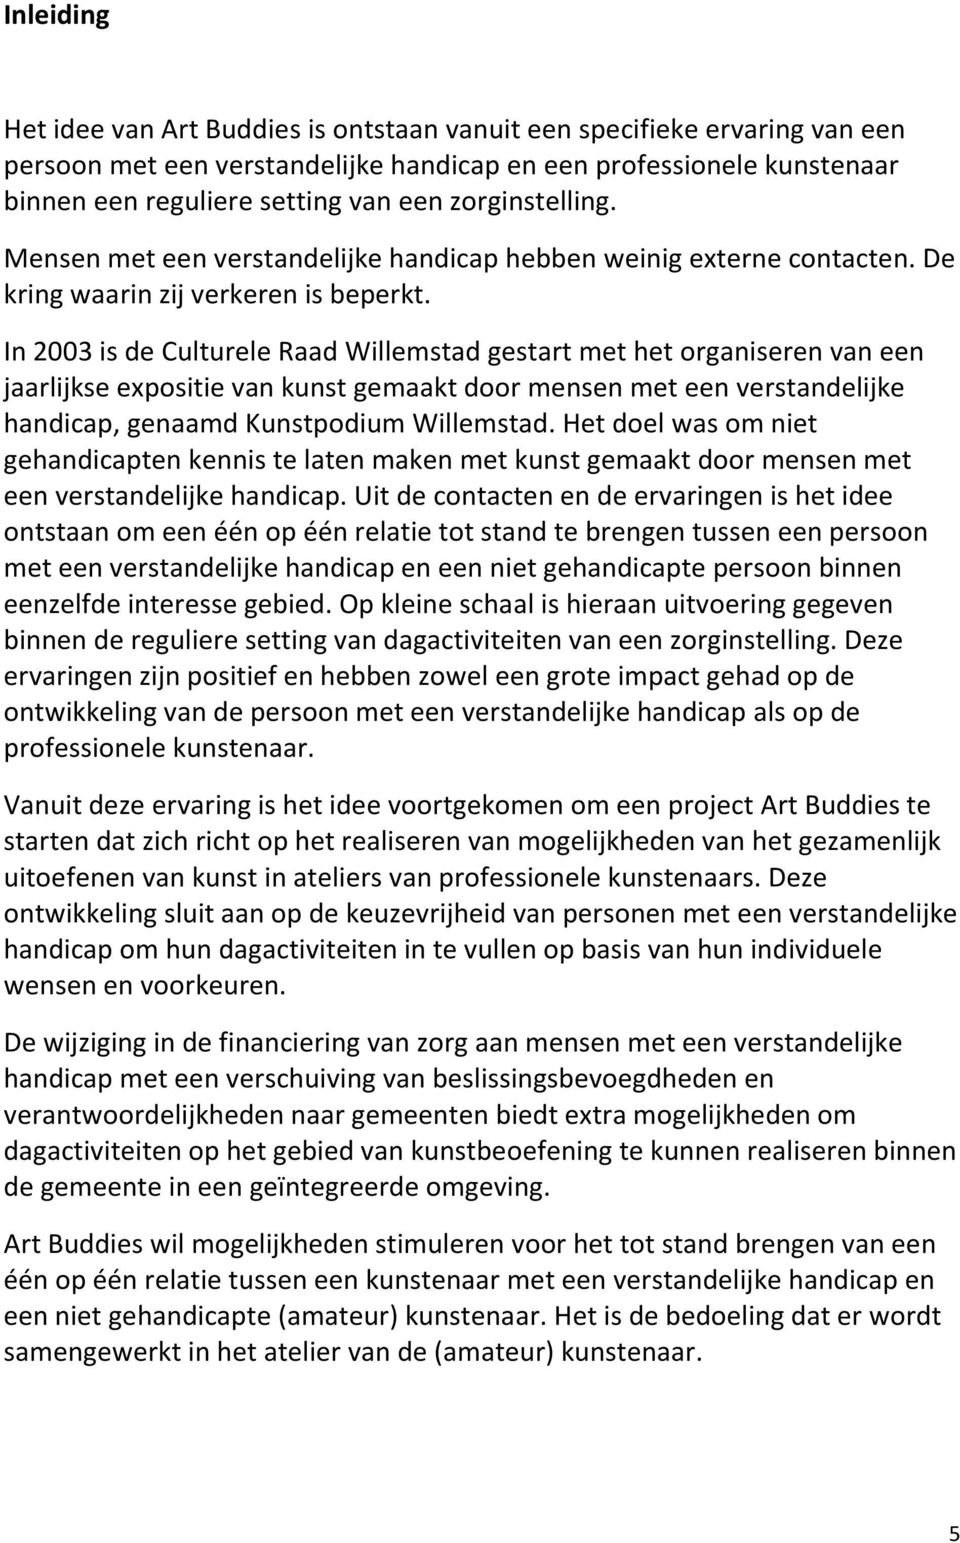 In 2003 is de Culturele Raad Willemstad gestart met het organiseren van een jaarlijkse expositie van kunst gemaakt door mensen met een verstandelijke handicap, genaamd Kunstpodium Willemstad.